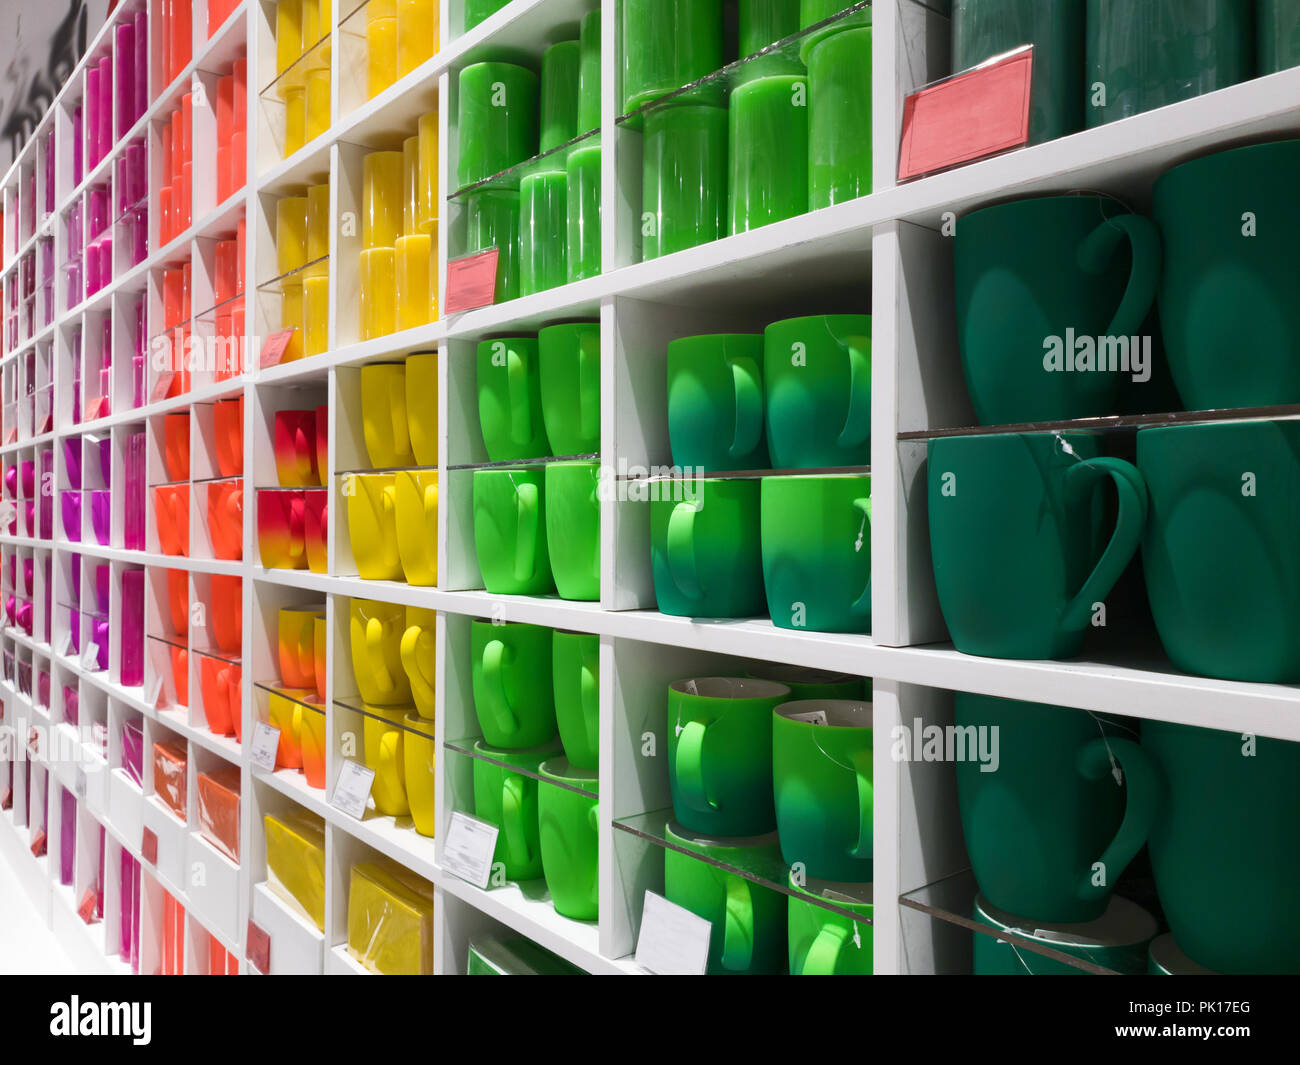 Tazze di colori diversi stand nella vetrina del negozio Foto Stock